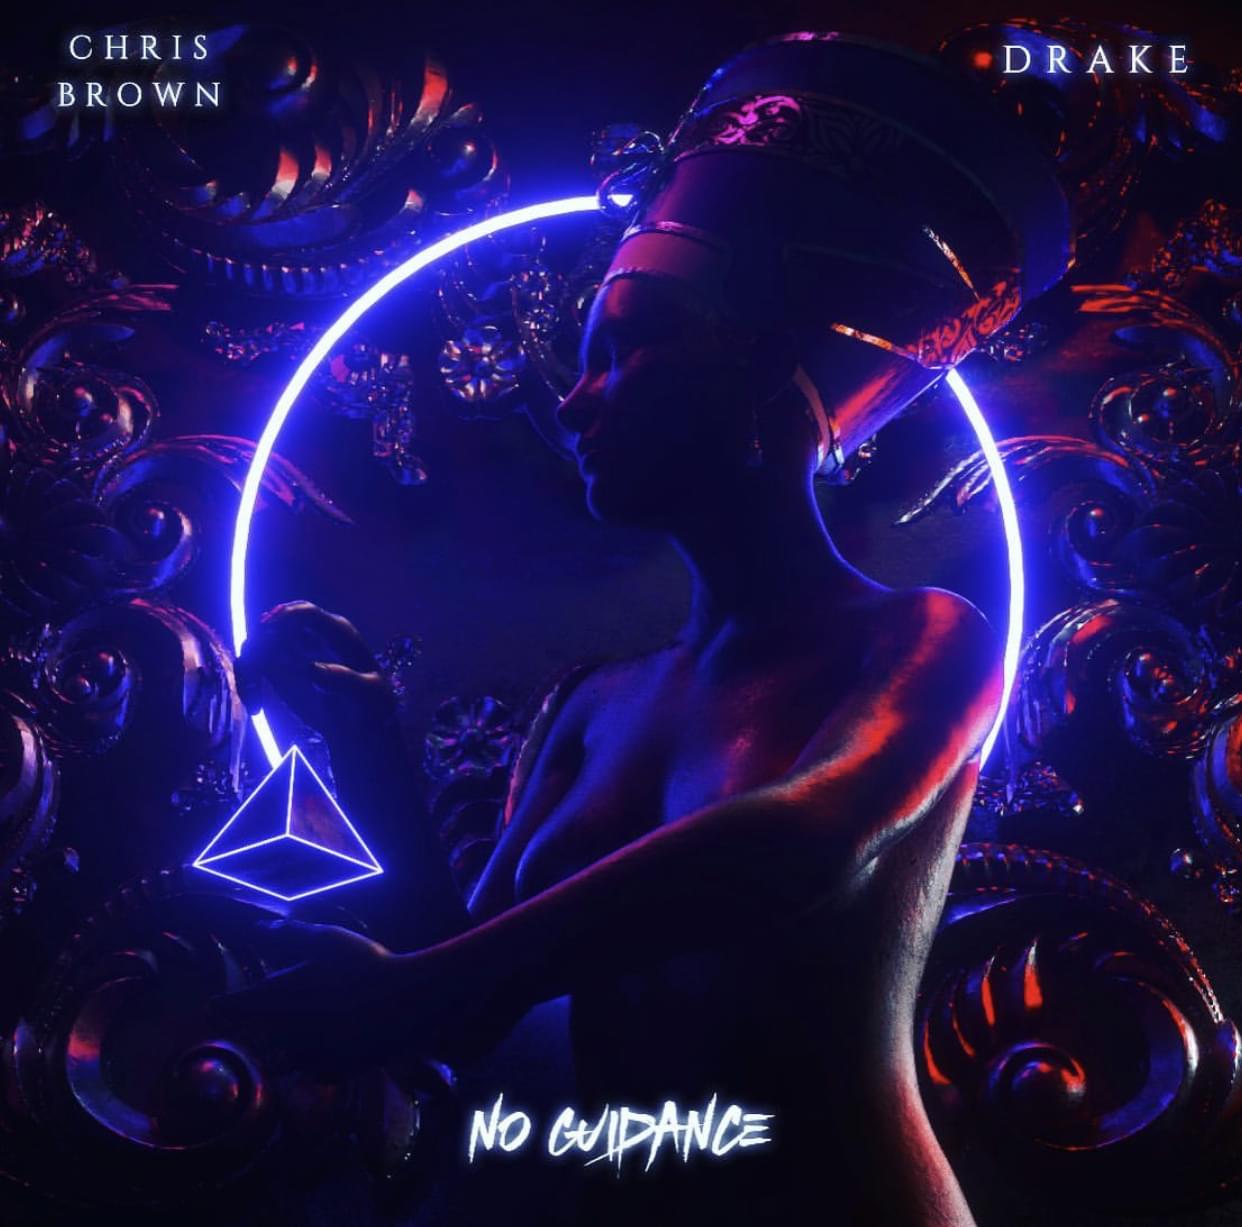 New Music: Chris Brown – “No Guidance” Feat. Drake [LISTEN]